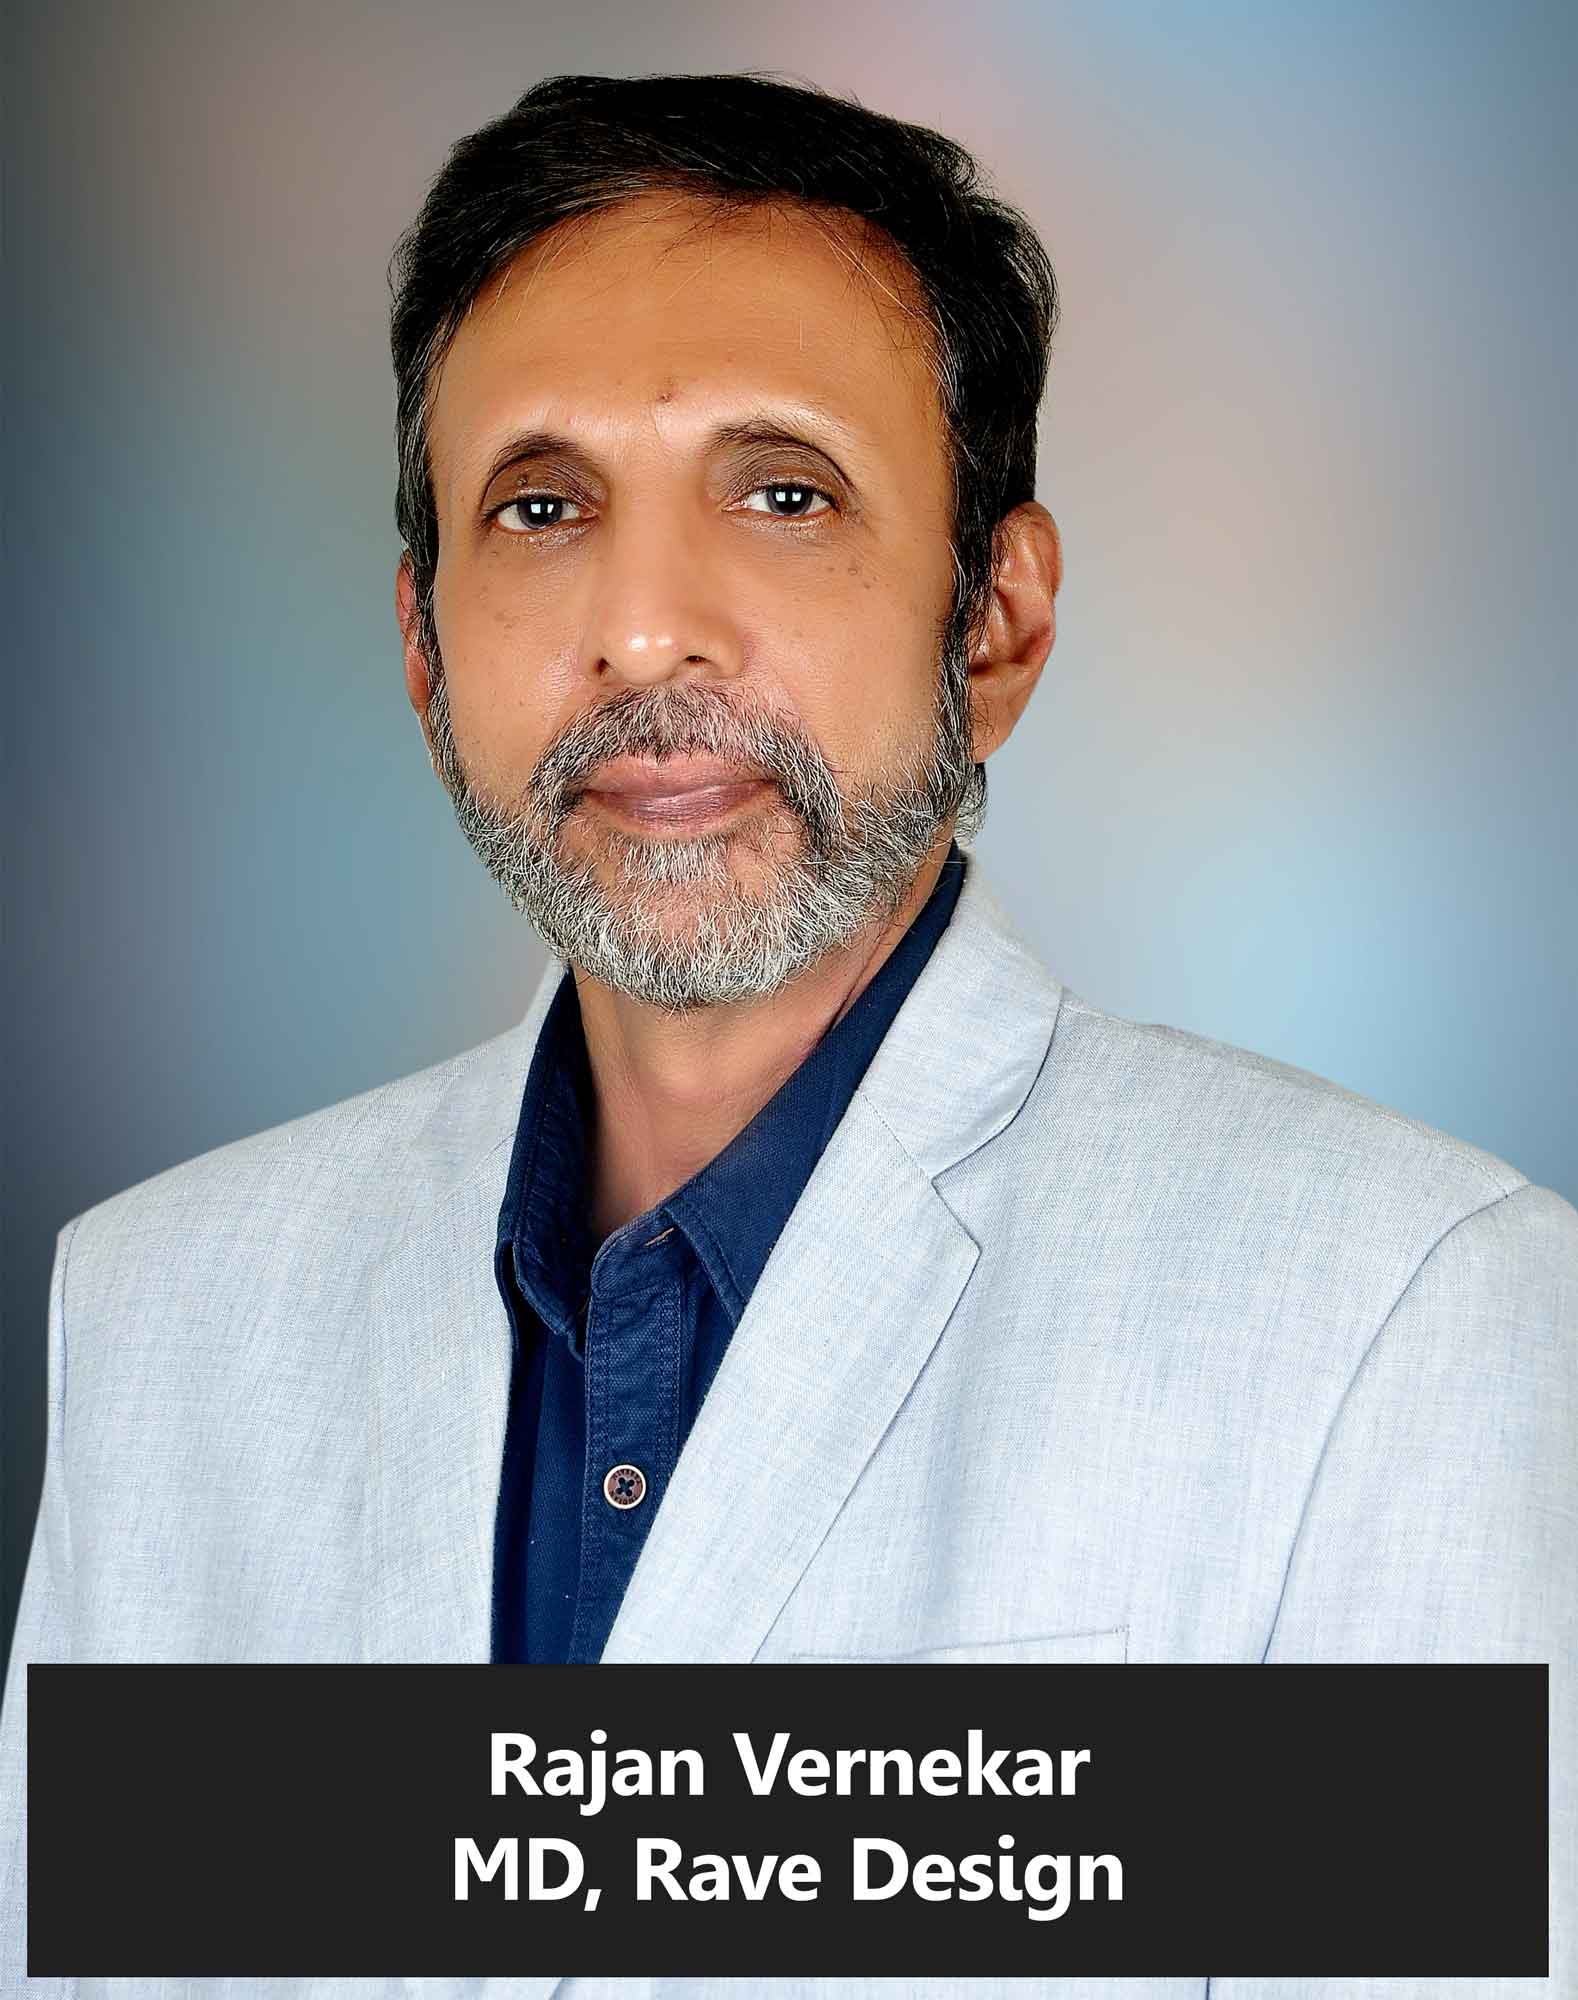 Rajan Vernekar, MD, Rave Design